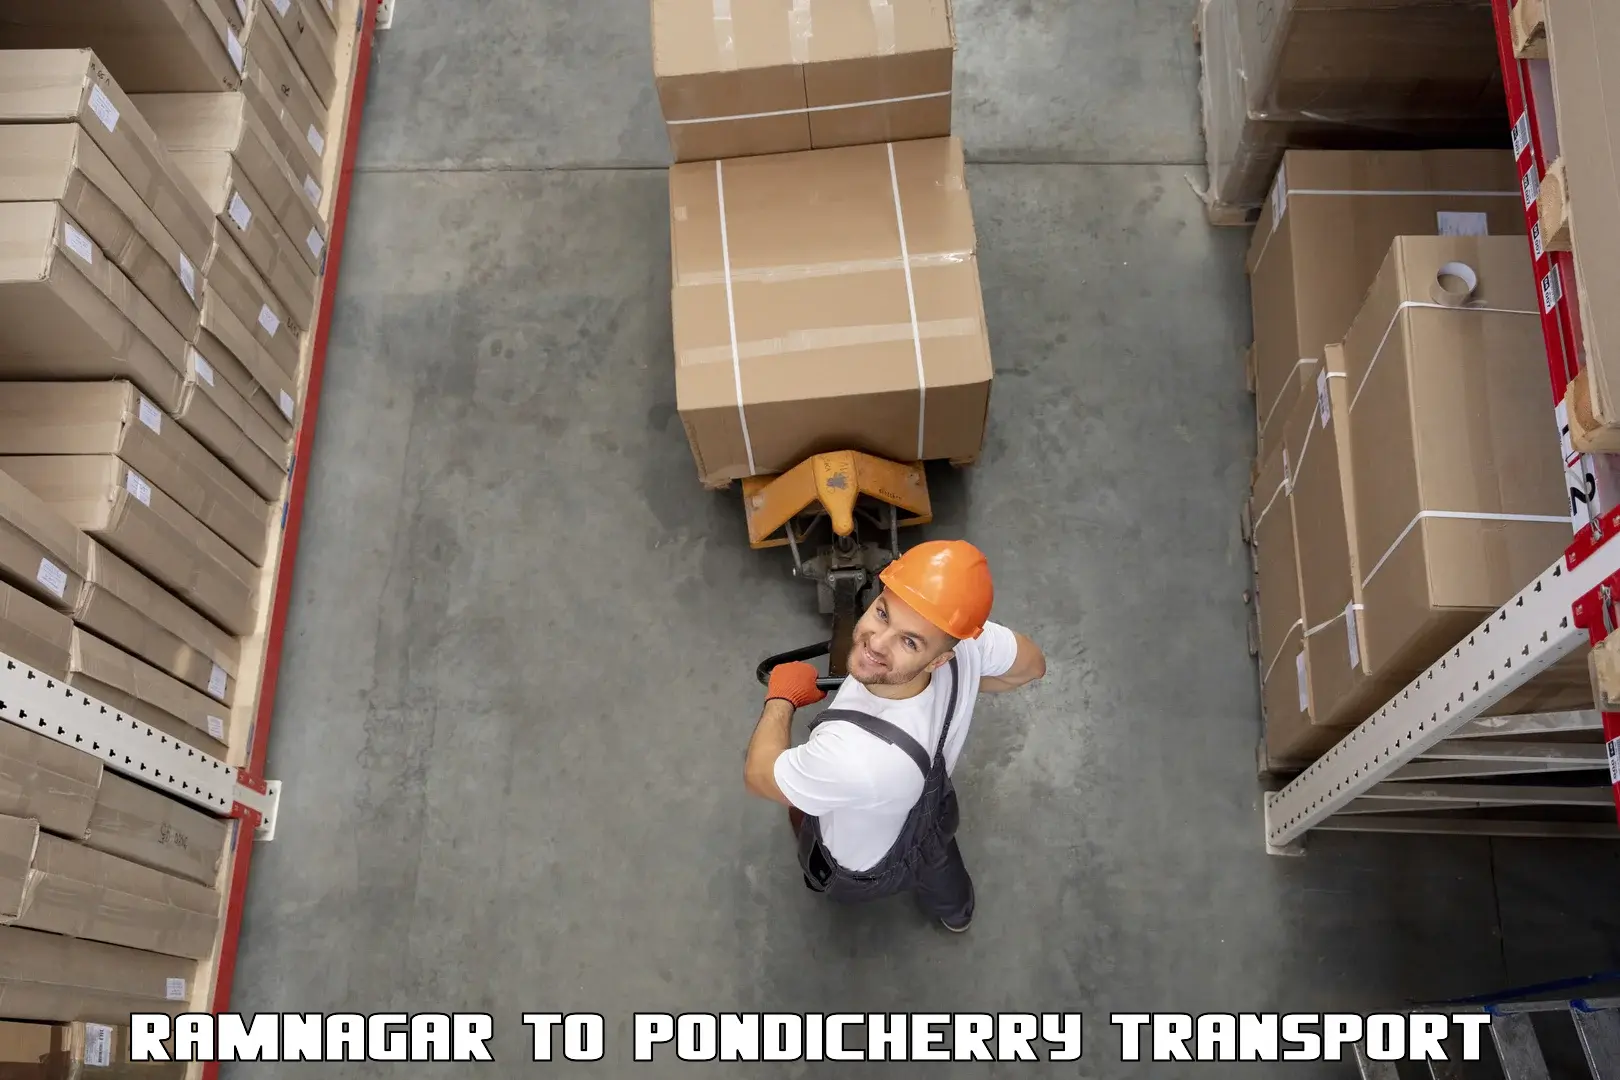 Container transport service Ramnagar to Pondicherry